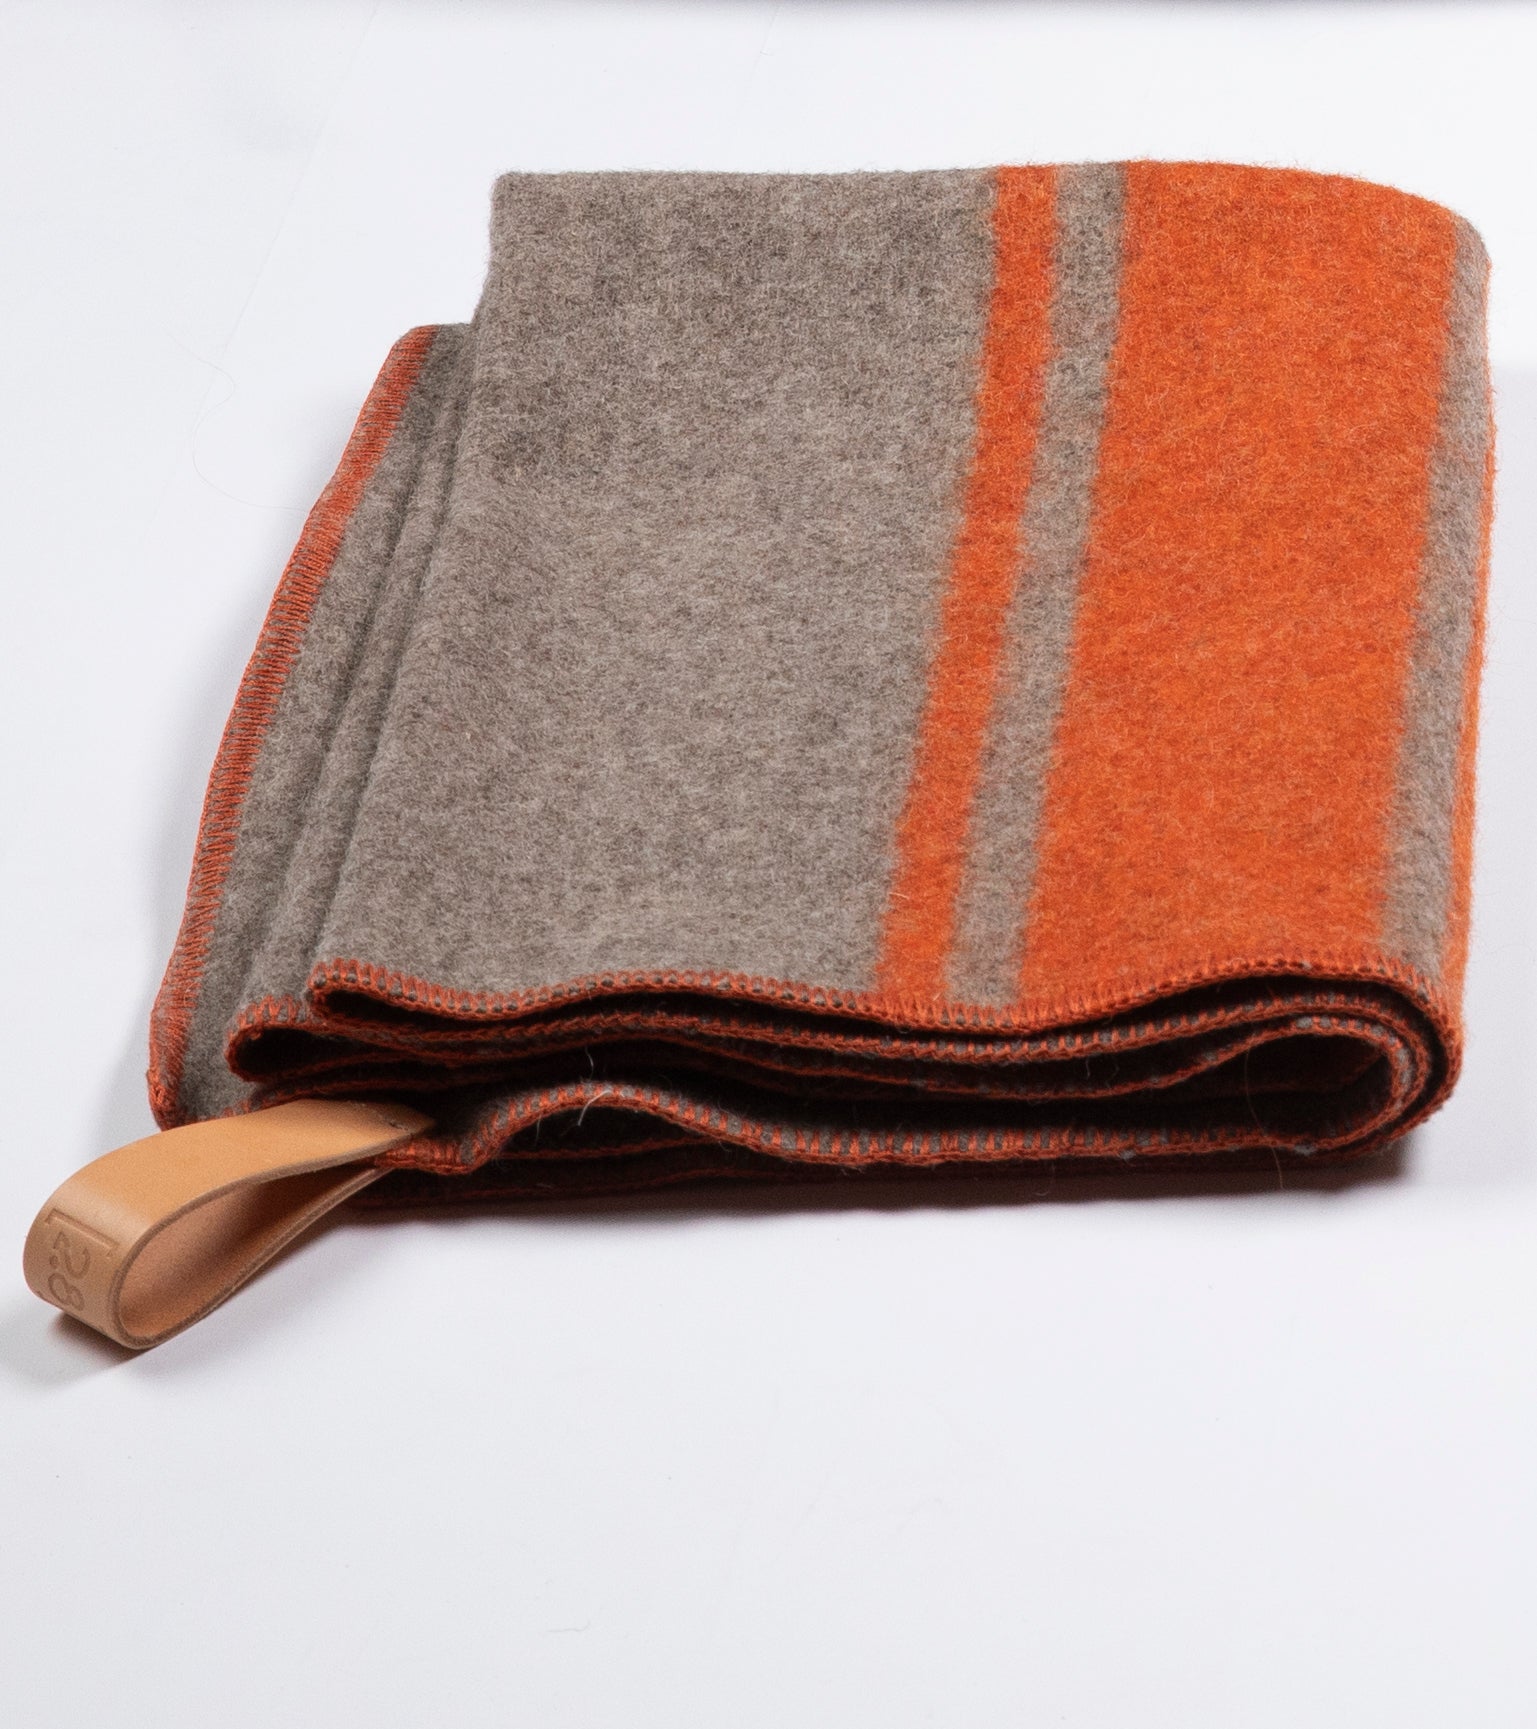 dog-blanket-orange-wool_93de6835-6bad-42b4-8d2b-0da0a665e946.jpg